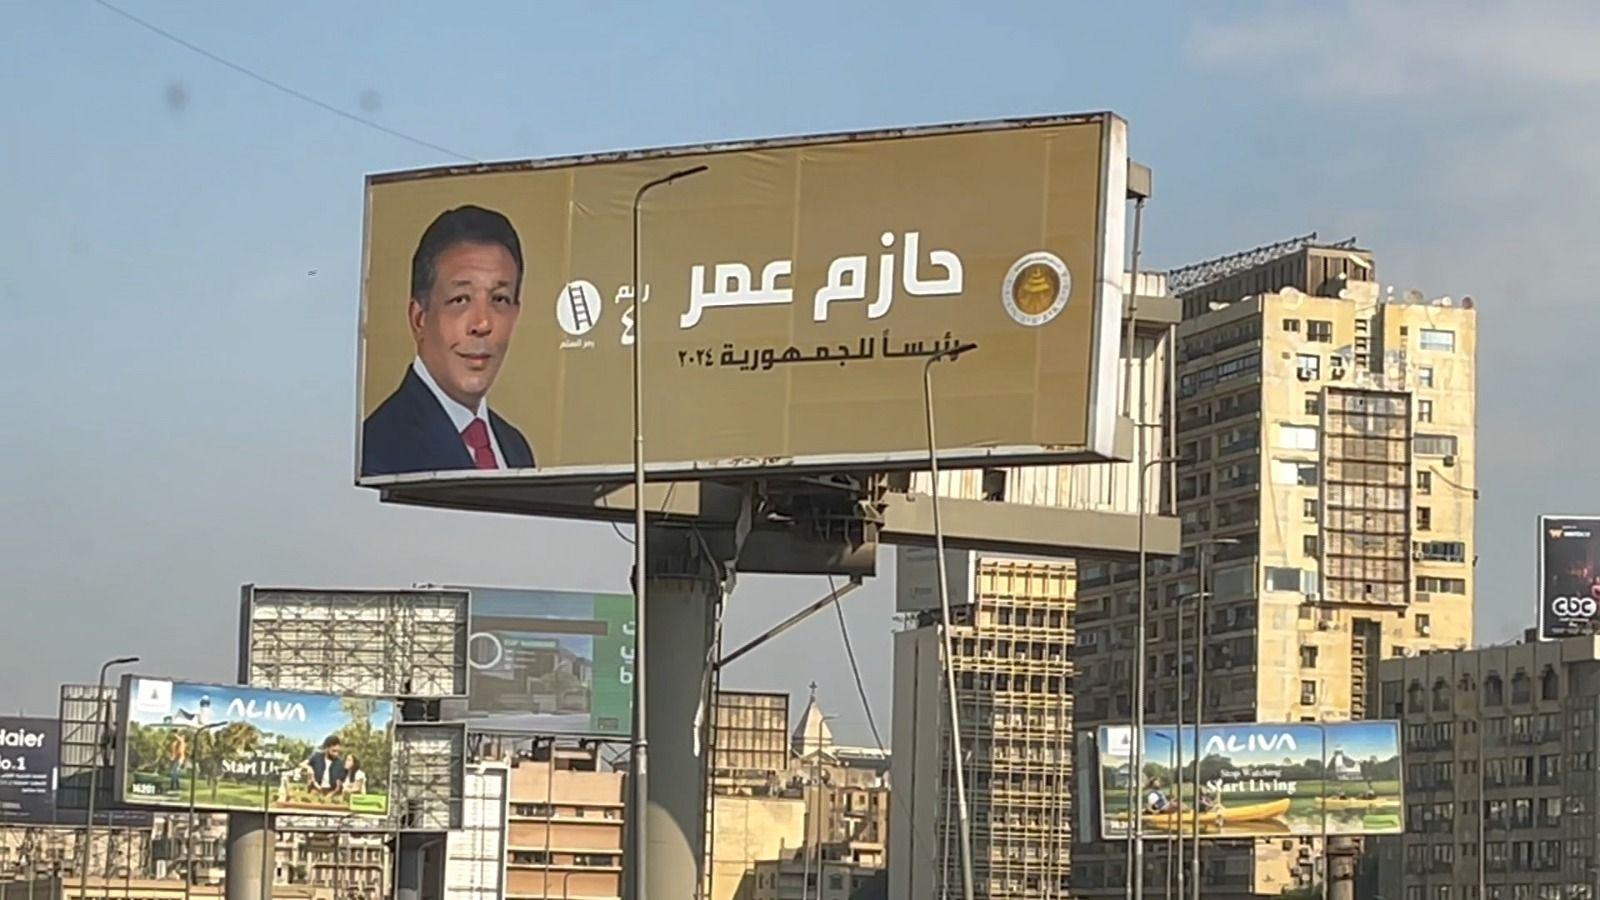 ملصق لحازم عمر أحد مرشحي الانتخابات الرئاسية المصرية